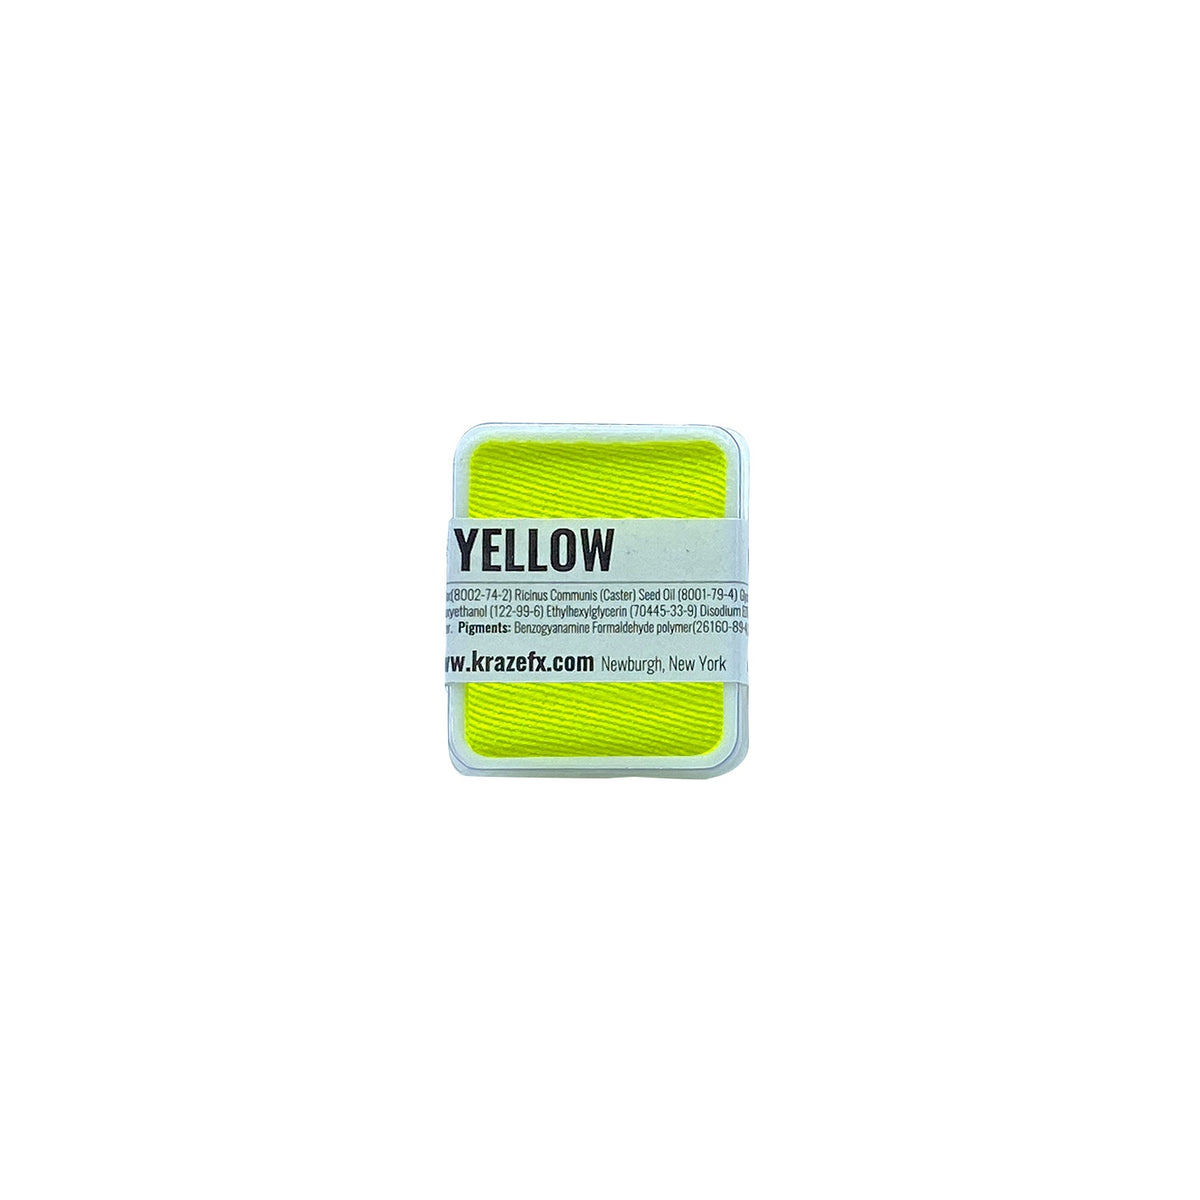 Kraze FX Face Paint Palette Refill - Neon Yellow (0.21 oz/6 gm)